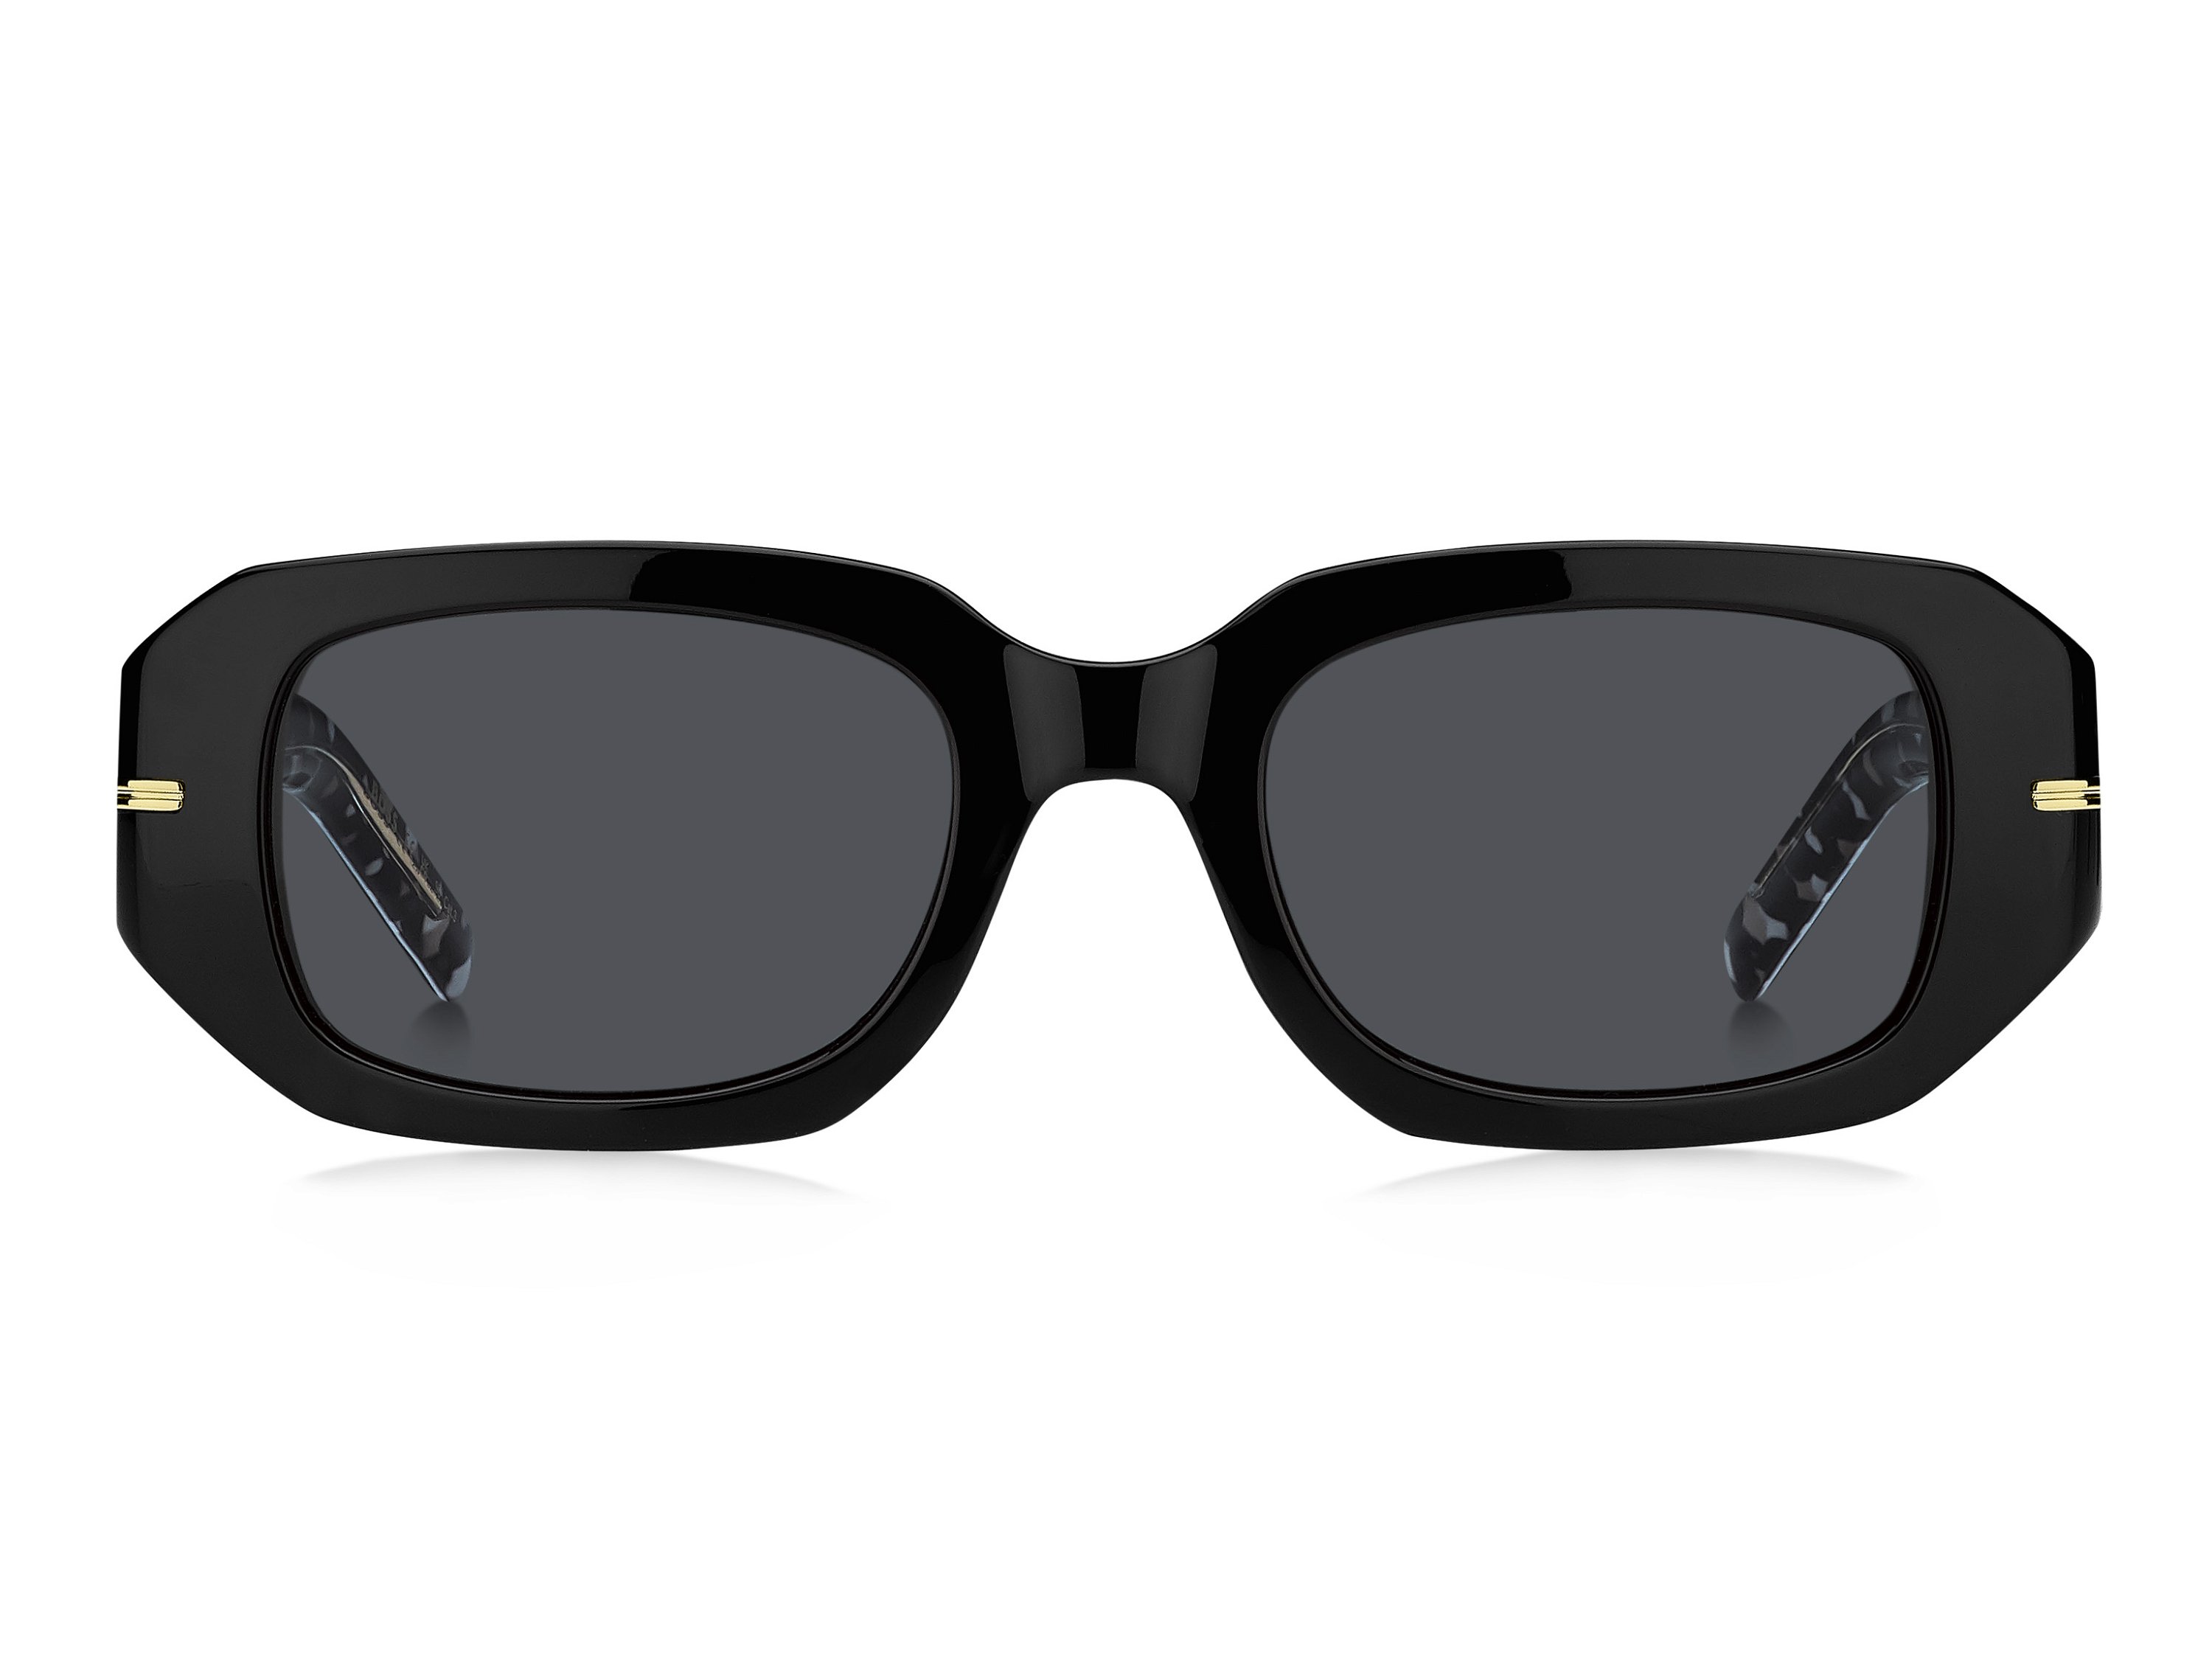 Das Bild zeigt die Sonnenbrille BOSS1608S 807 von der Marke BOSS in Schwarz.